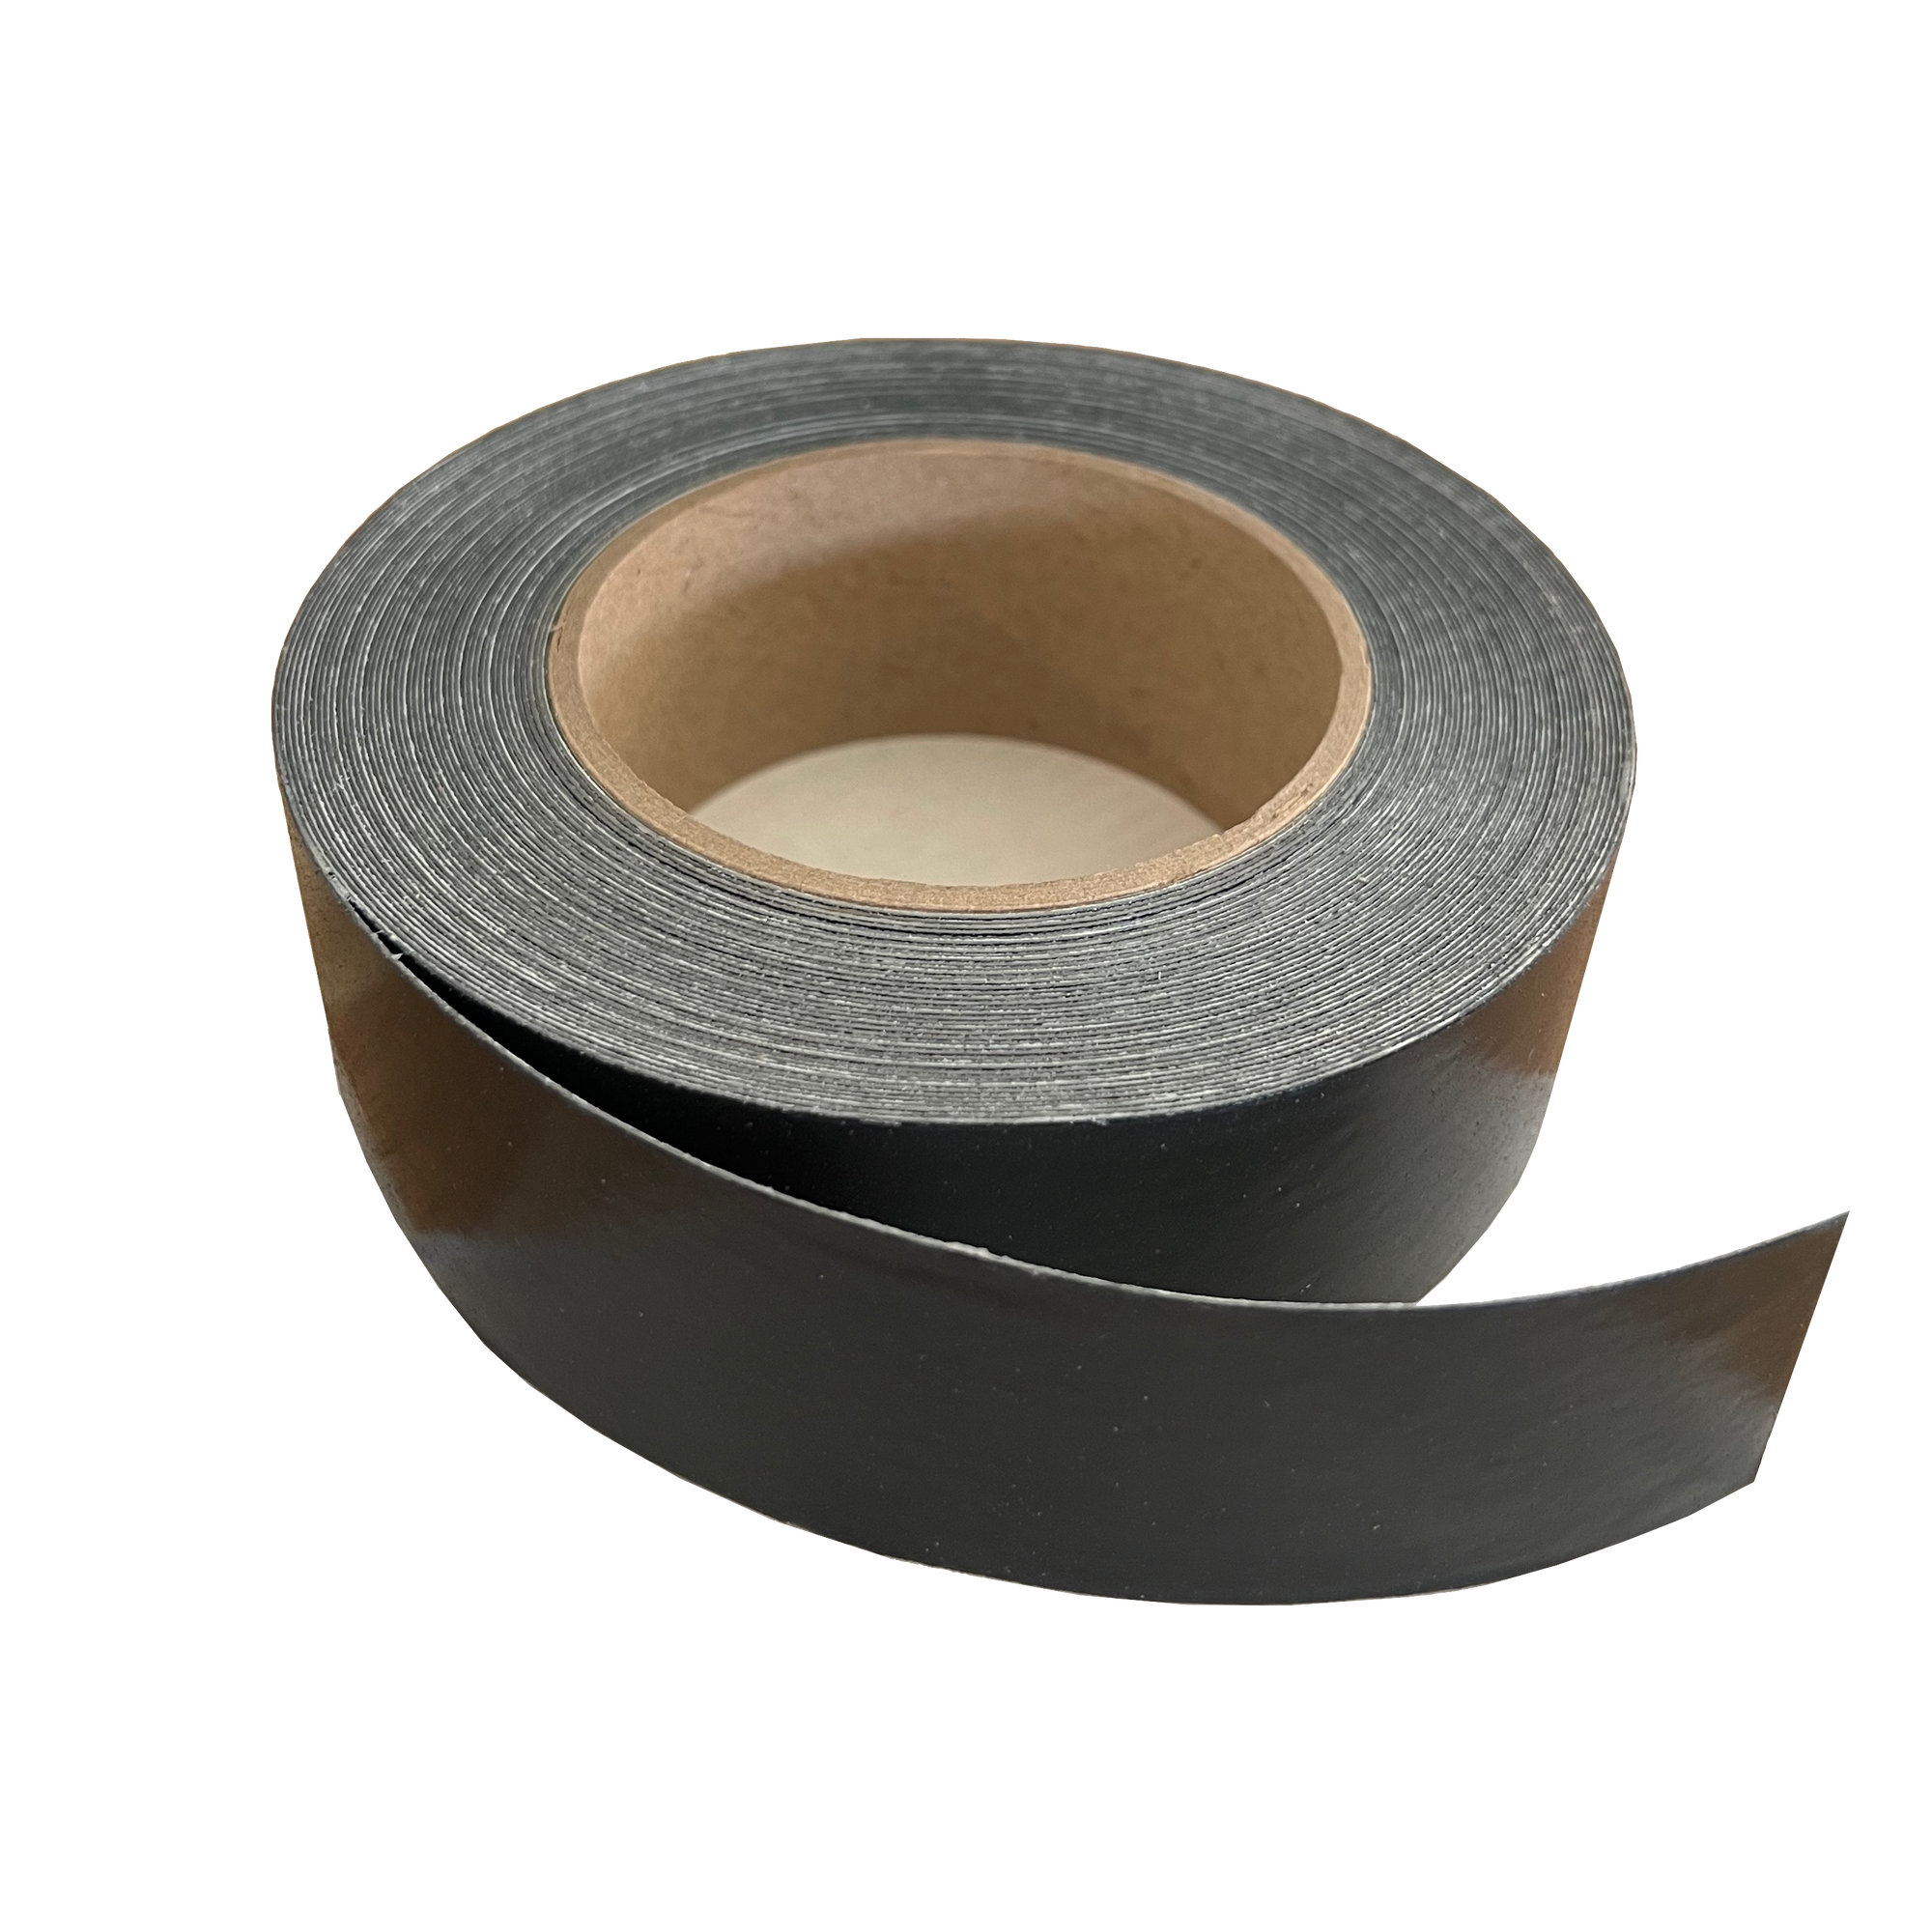 Imus Seal Butyl Joist Tape Non-Skid 1-5/8 inch open roll